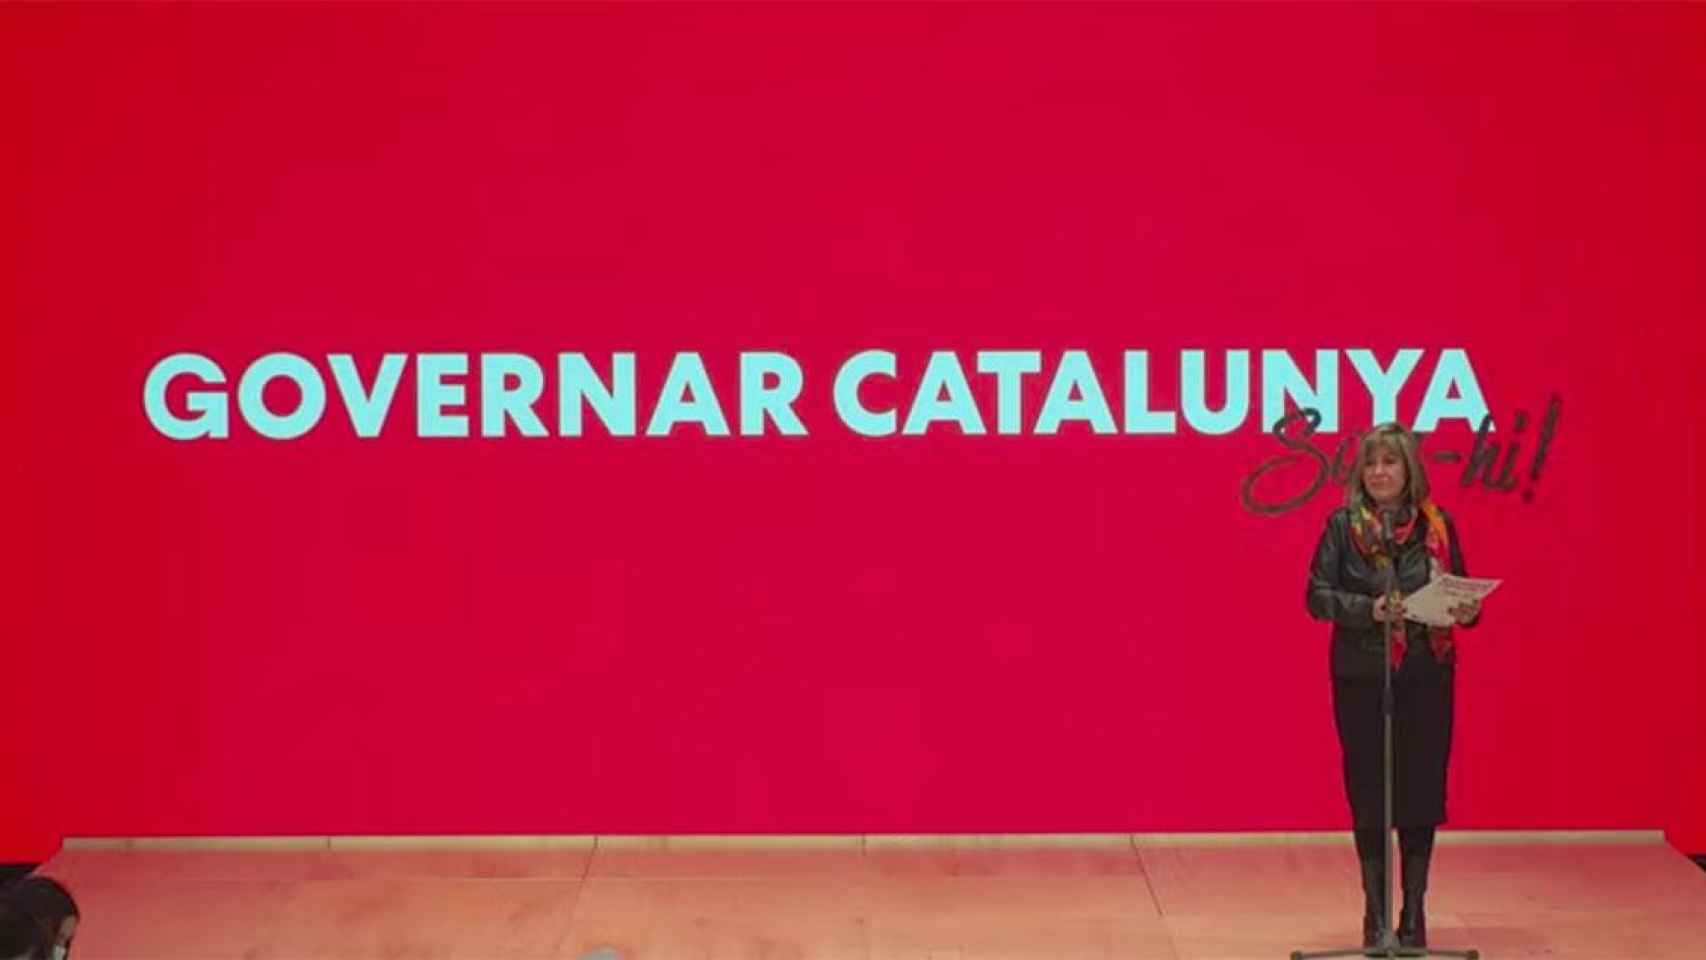 La presidenta del PSC, Nuria Marín, presenta el lema del congreso extraordinario del PSC